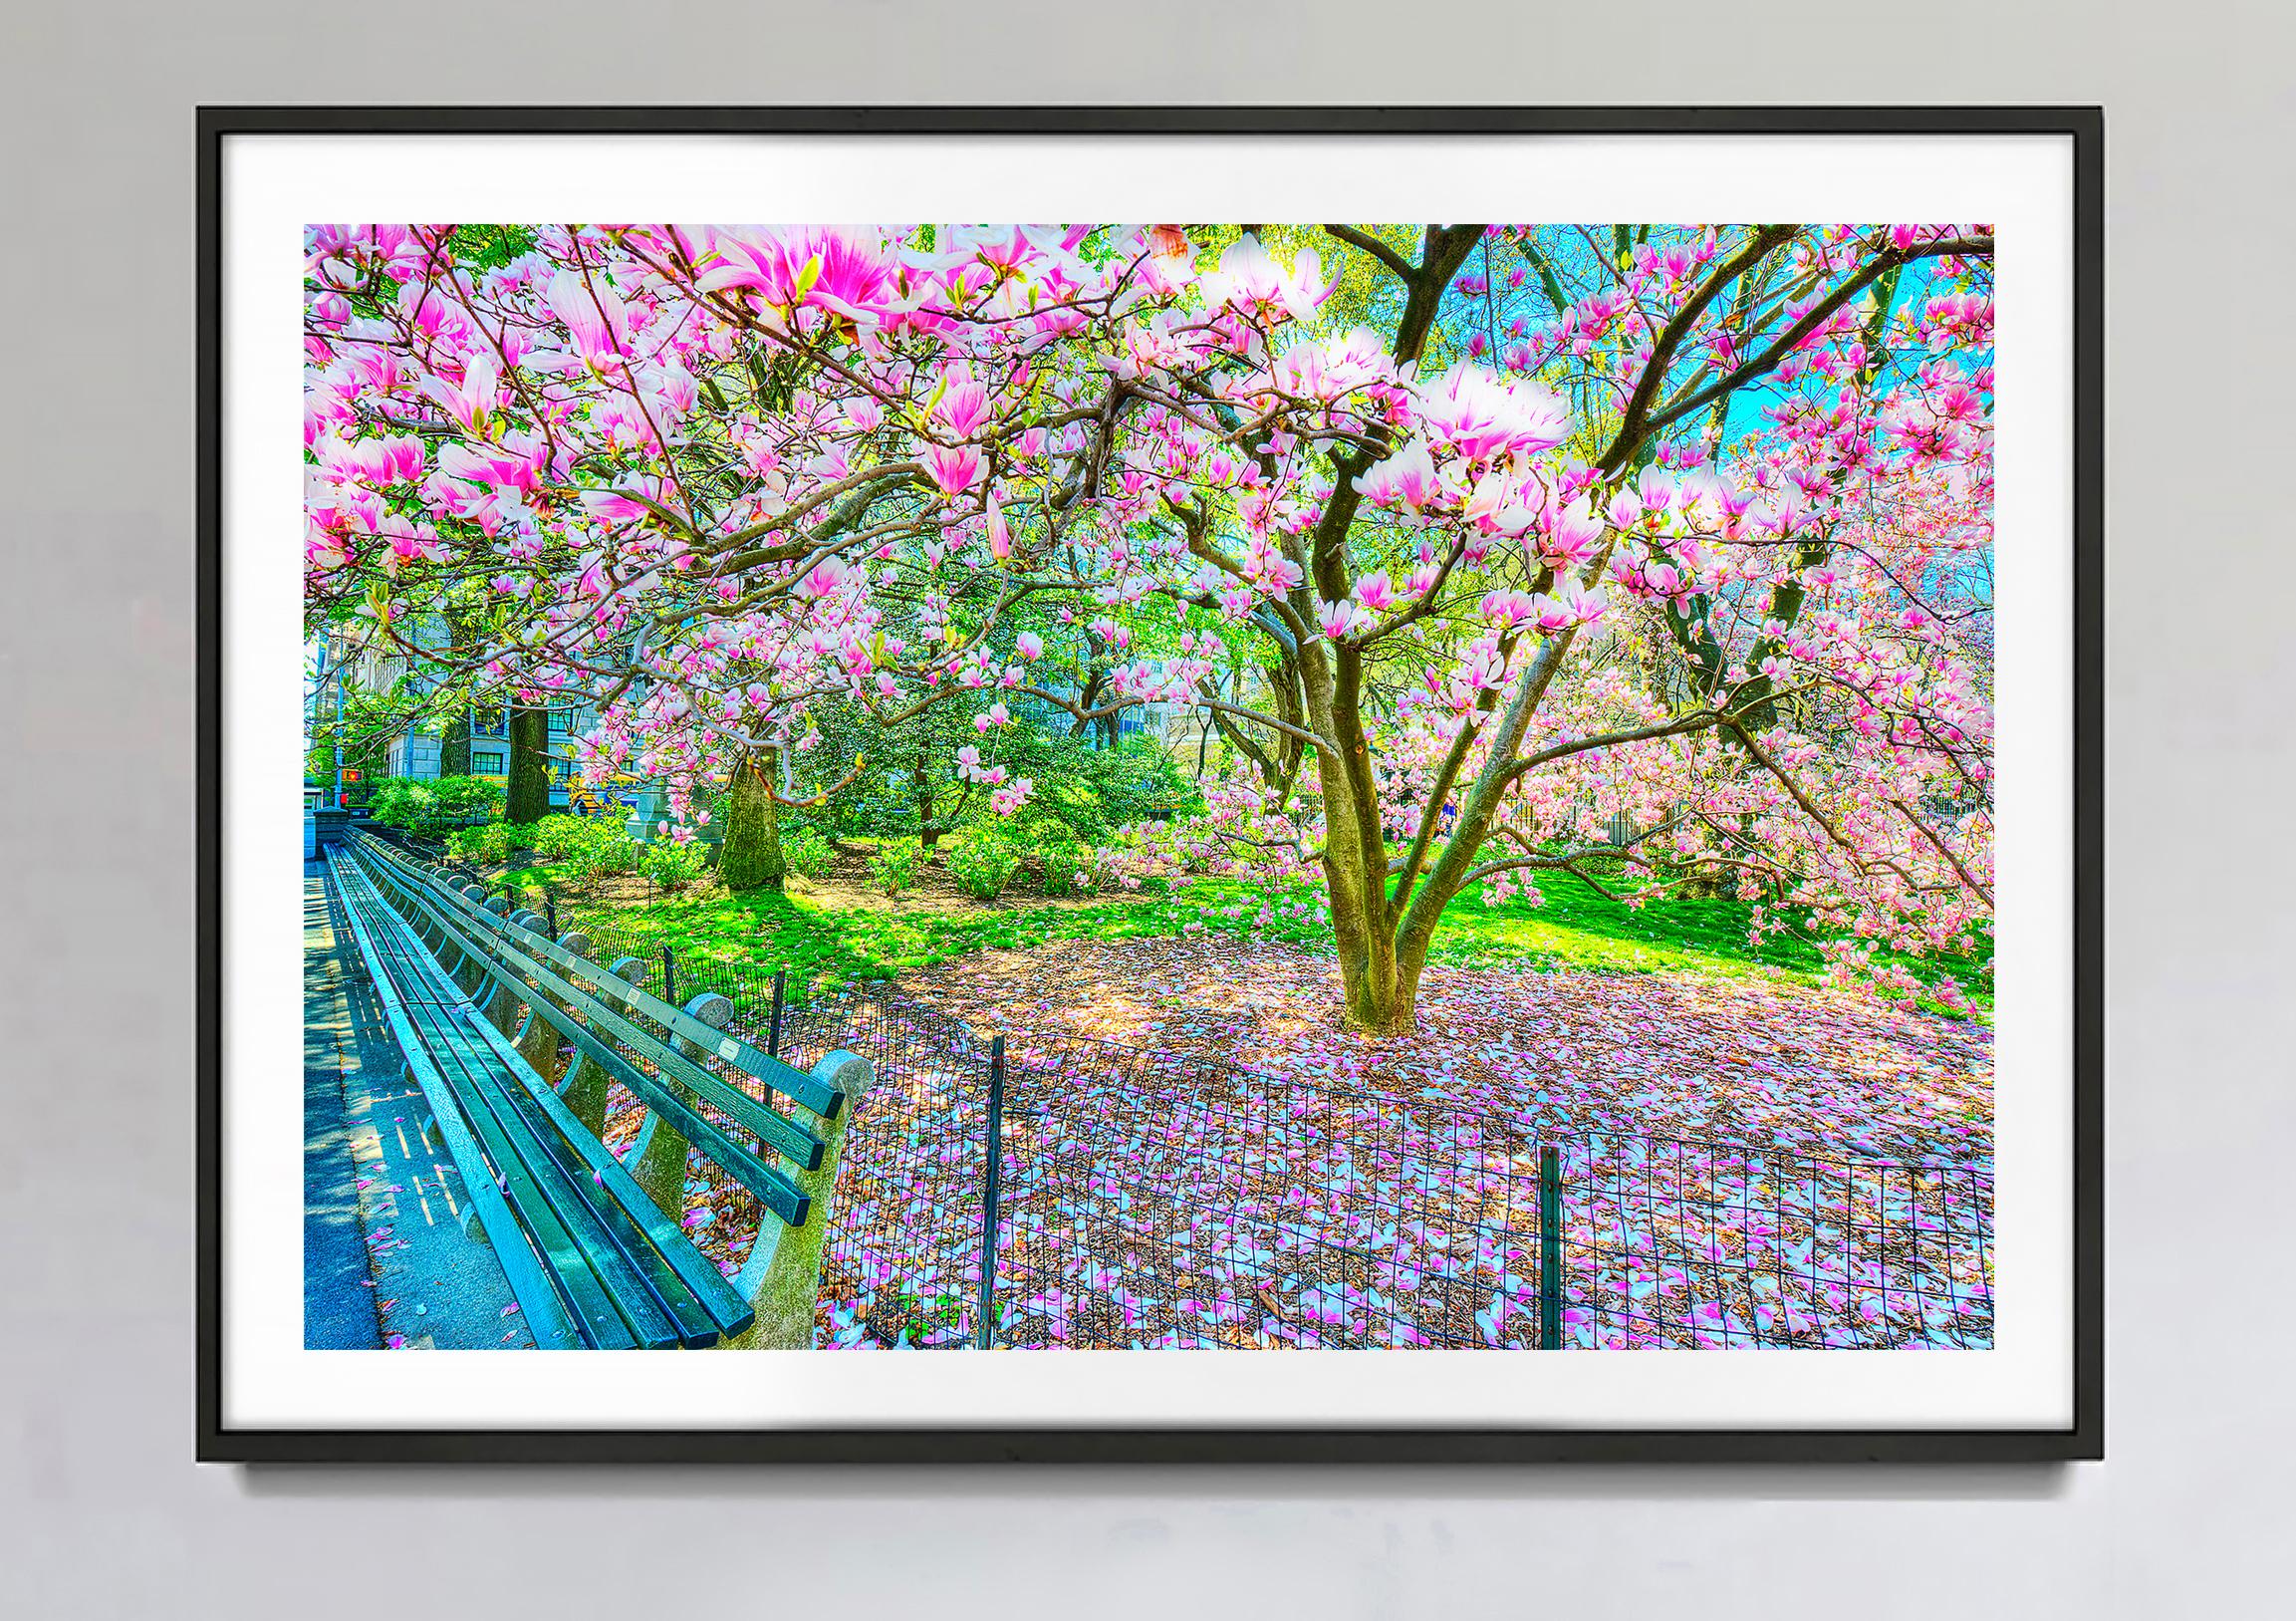 L'arbre en fleurs de Magnolia au printemps, Central Park  New York City en roses et bleus - Photograph de Mitchell Funk